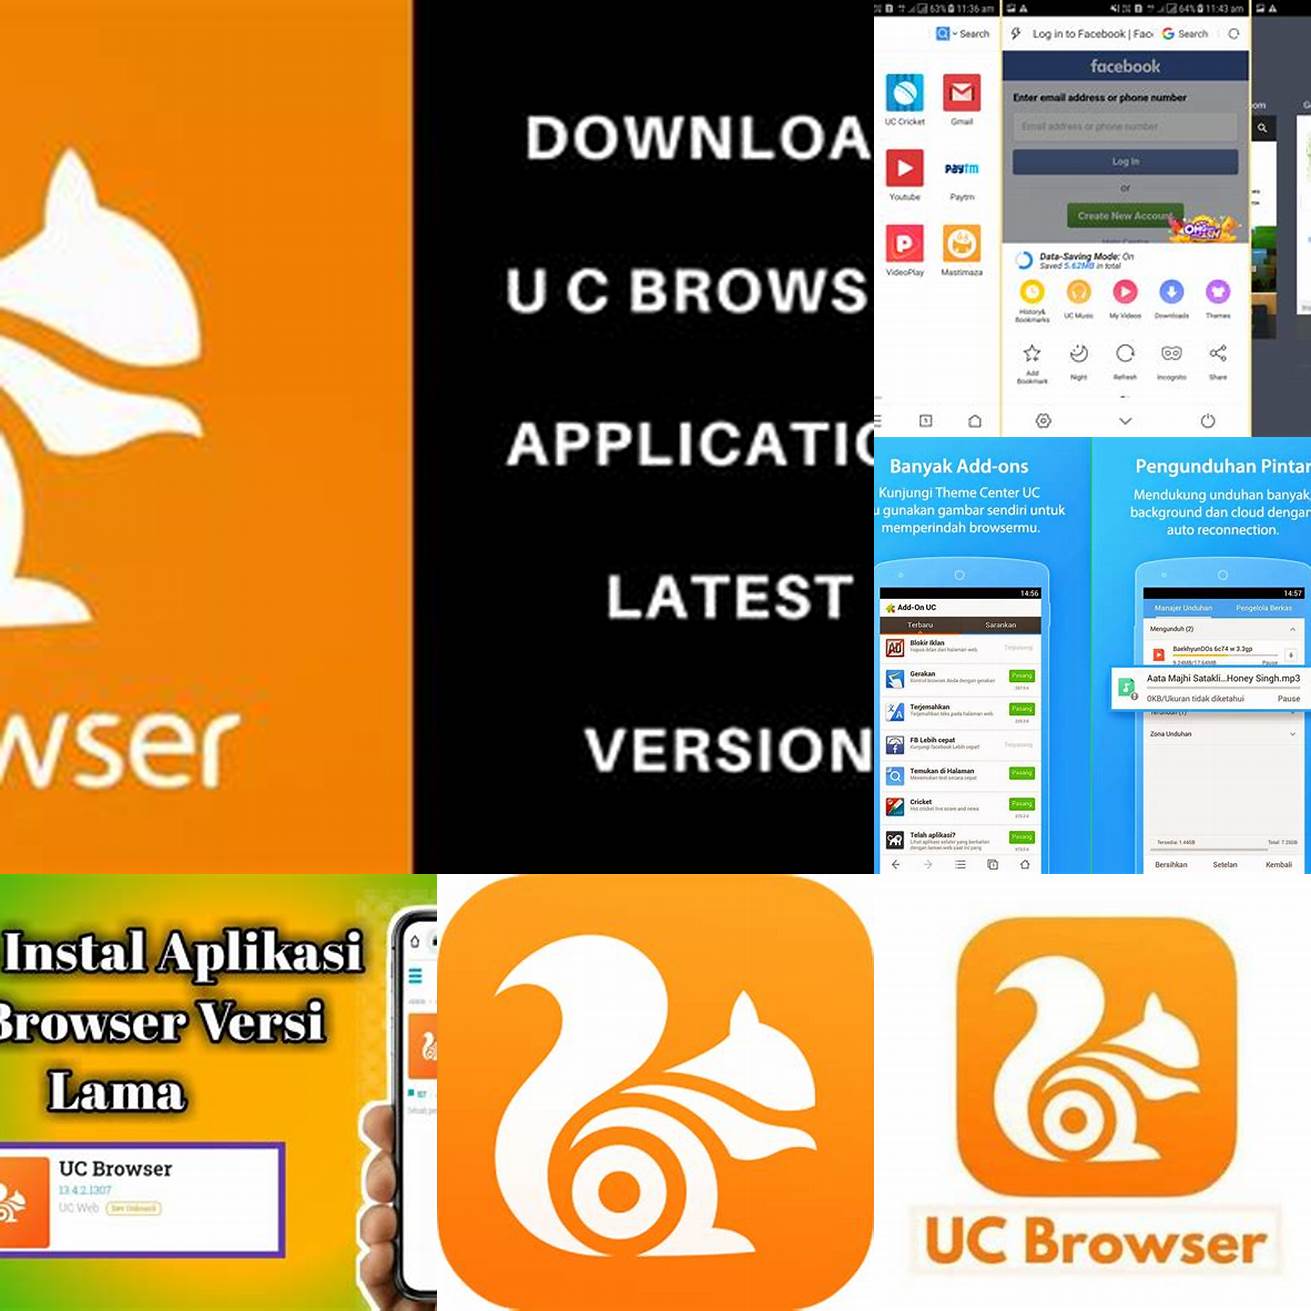 Klik tombol Download APK untuk mulai mengunduh file APK UC Browser versi lama